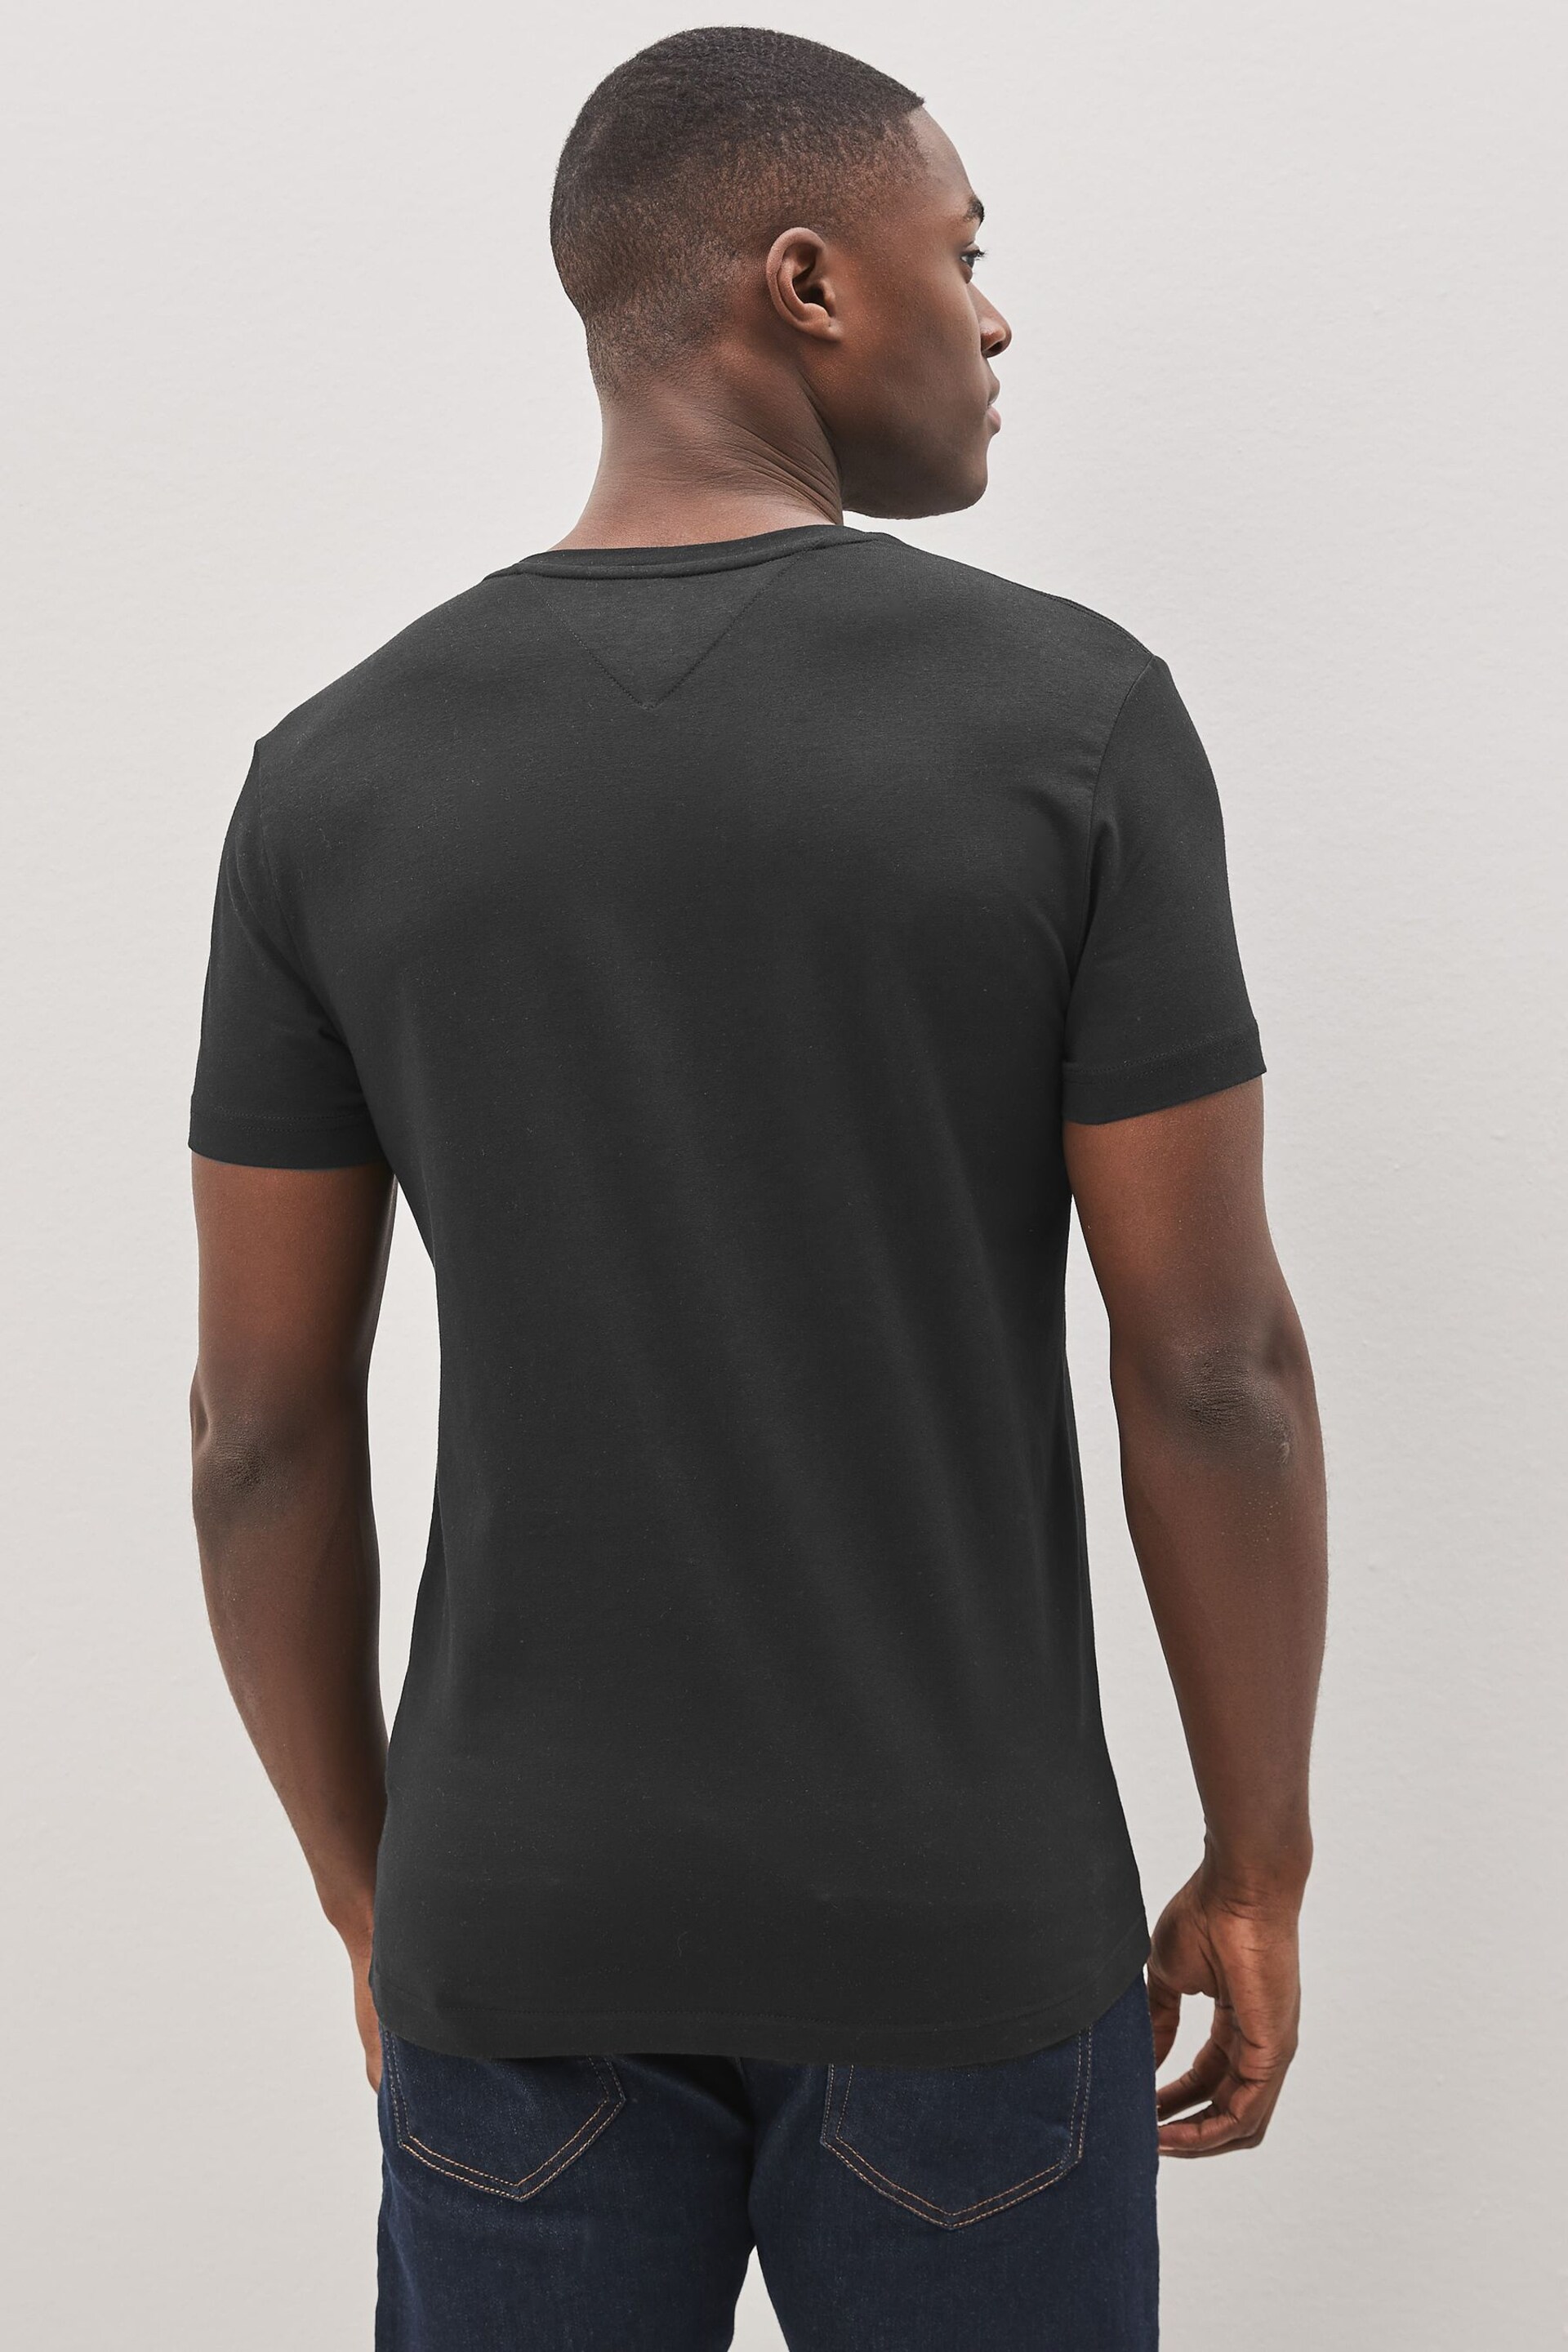 Tommy Hilfiger Black Core Stretch Slim Fit V-Neck T-Shirt - Image 2 of 4